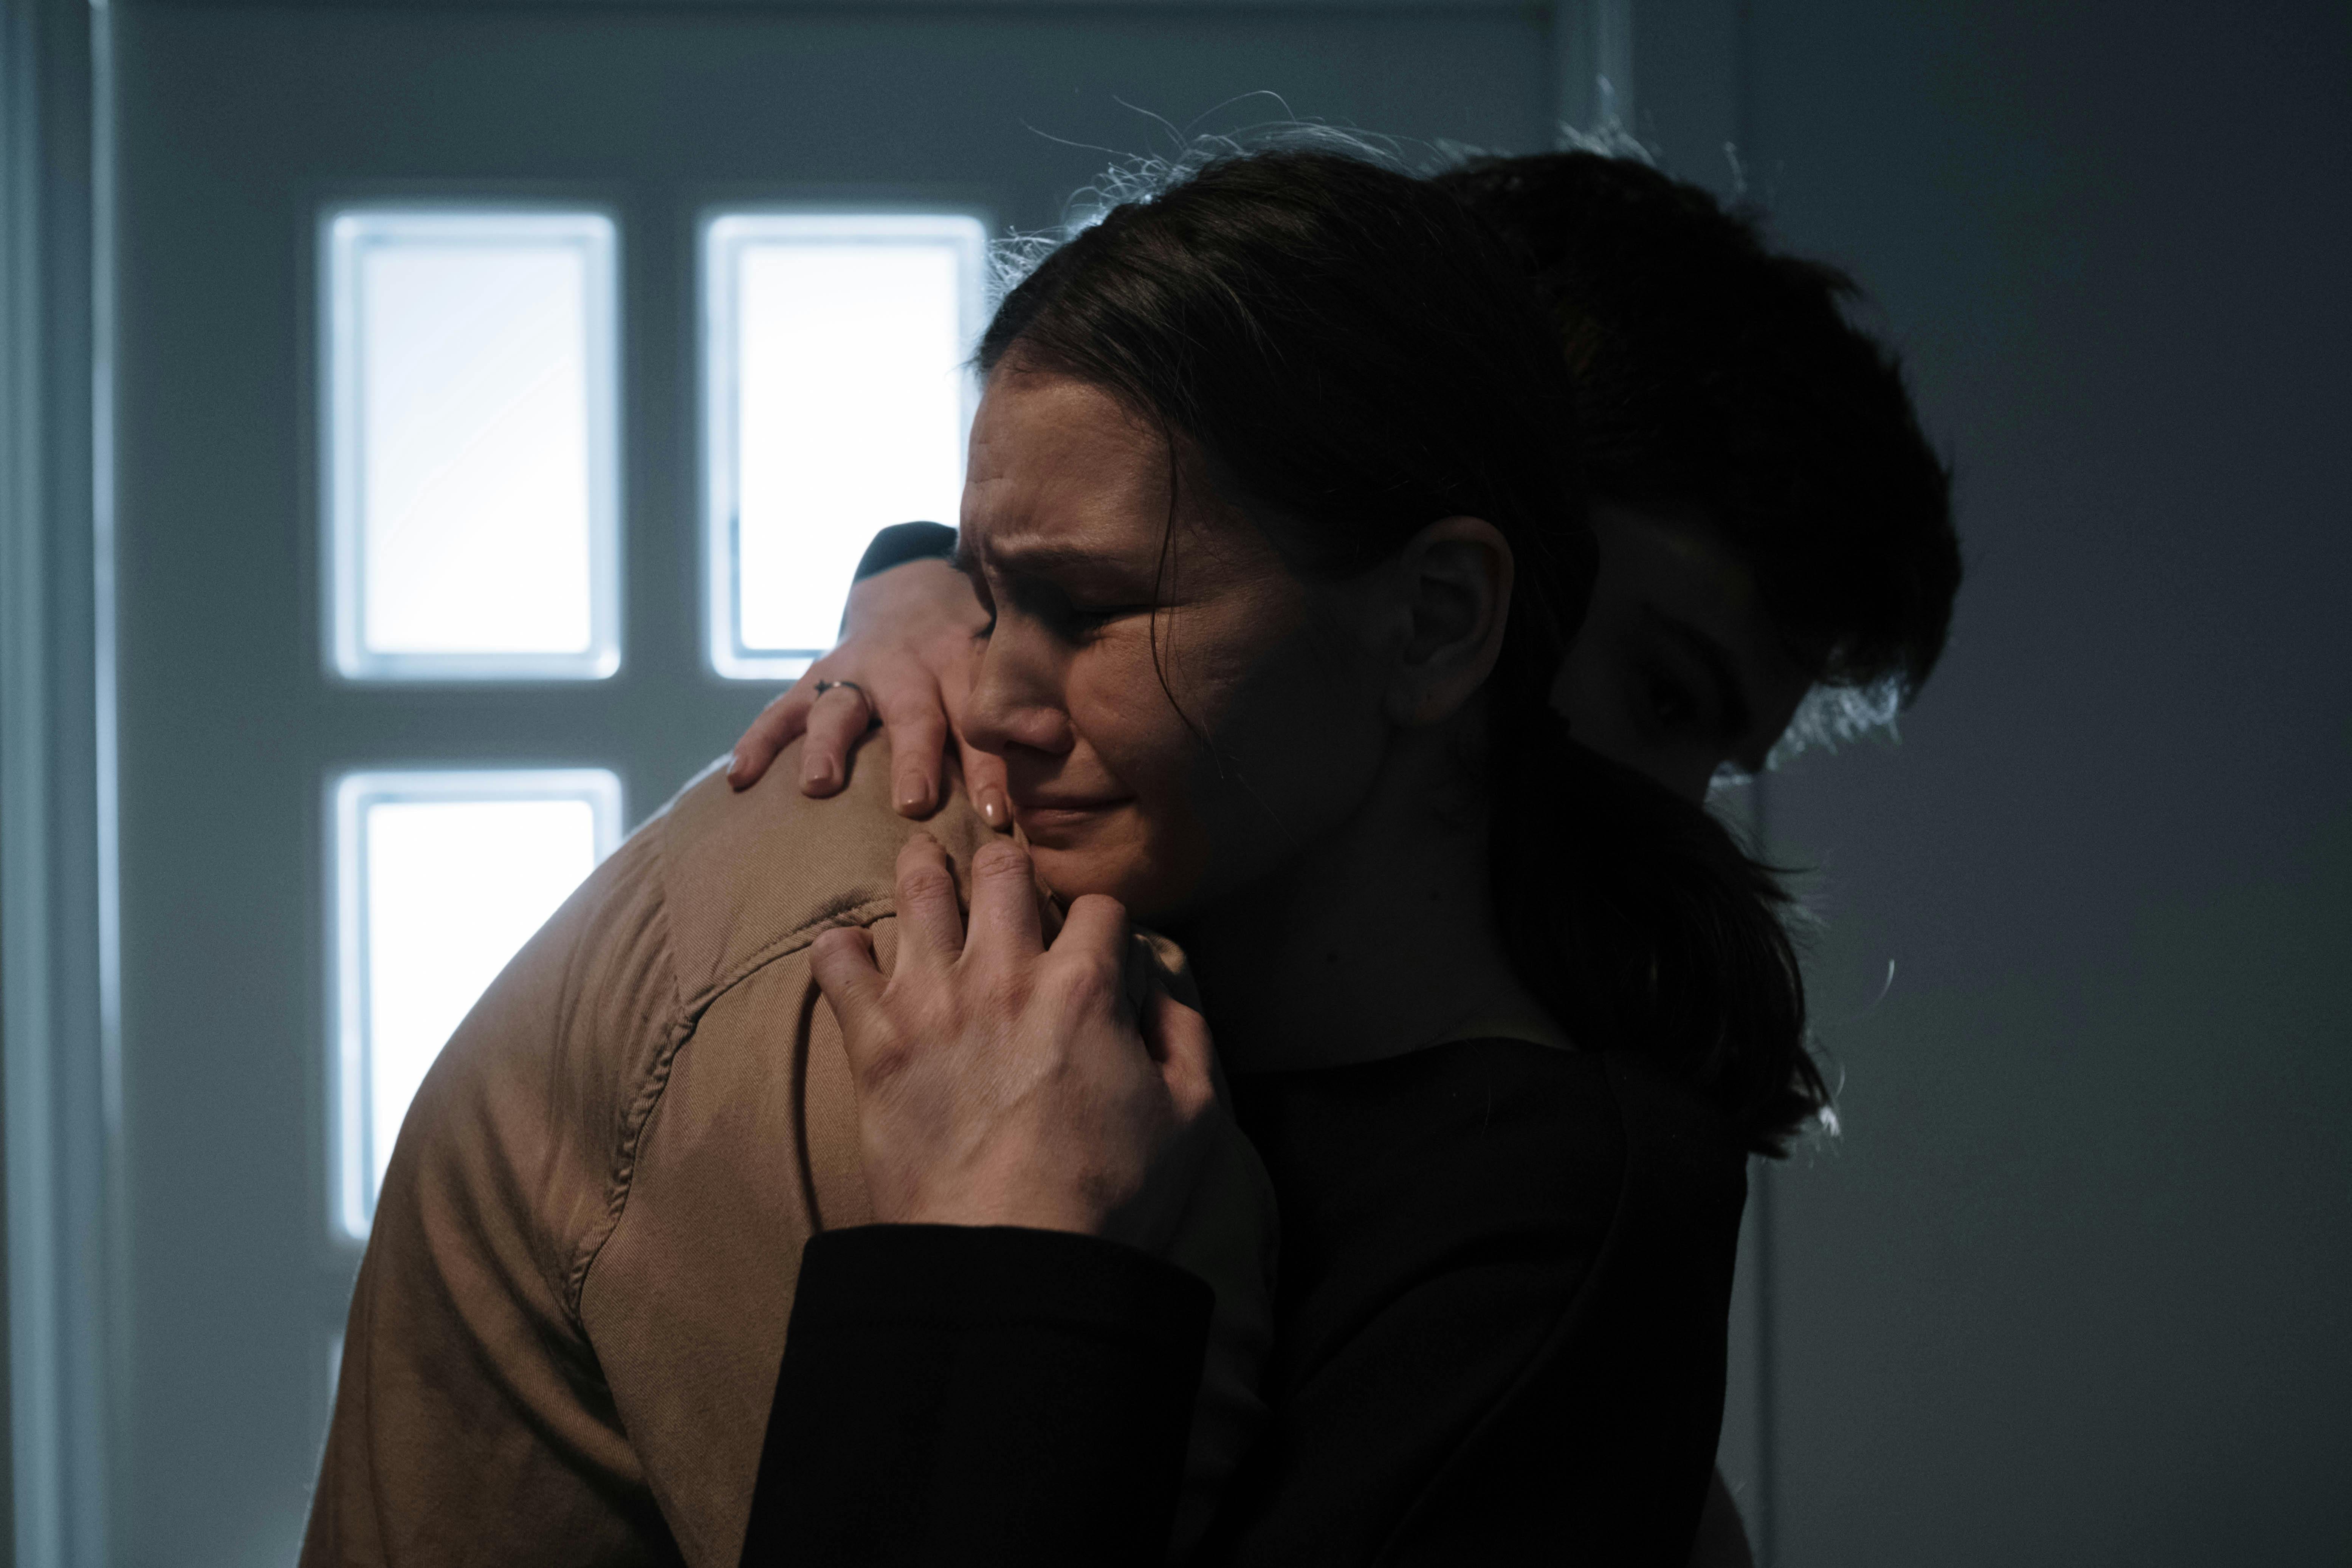 Eine weinende Frau, die jemanden umarmt | Quelle: Pexels